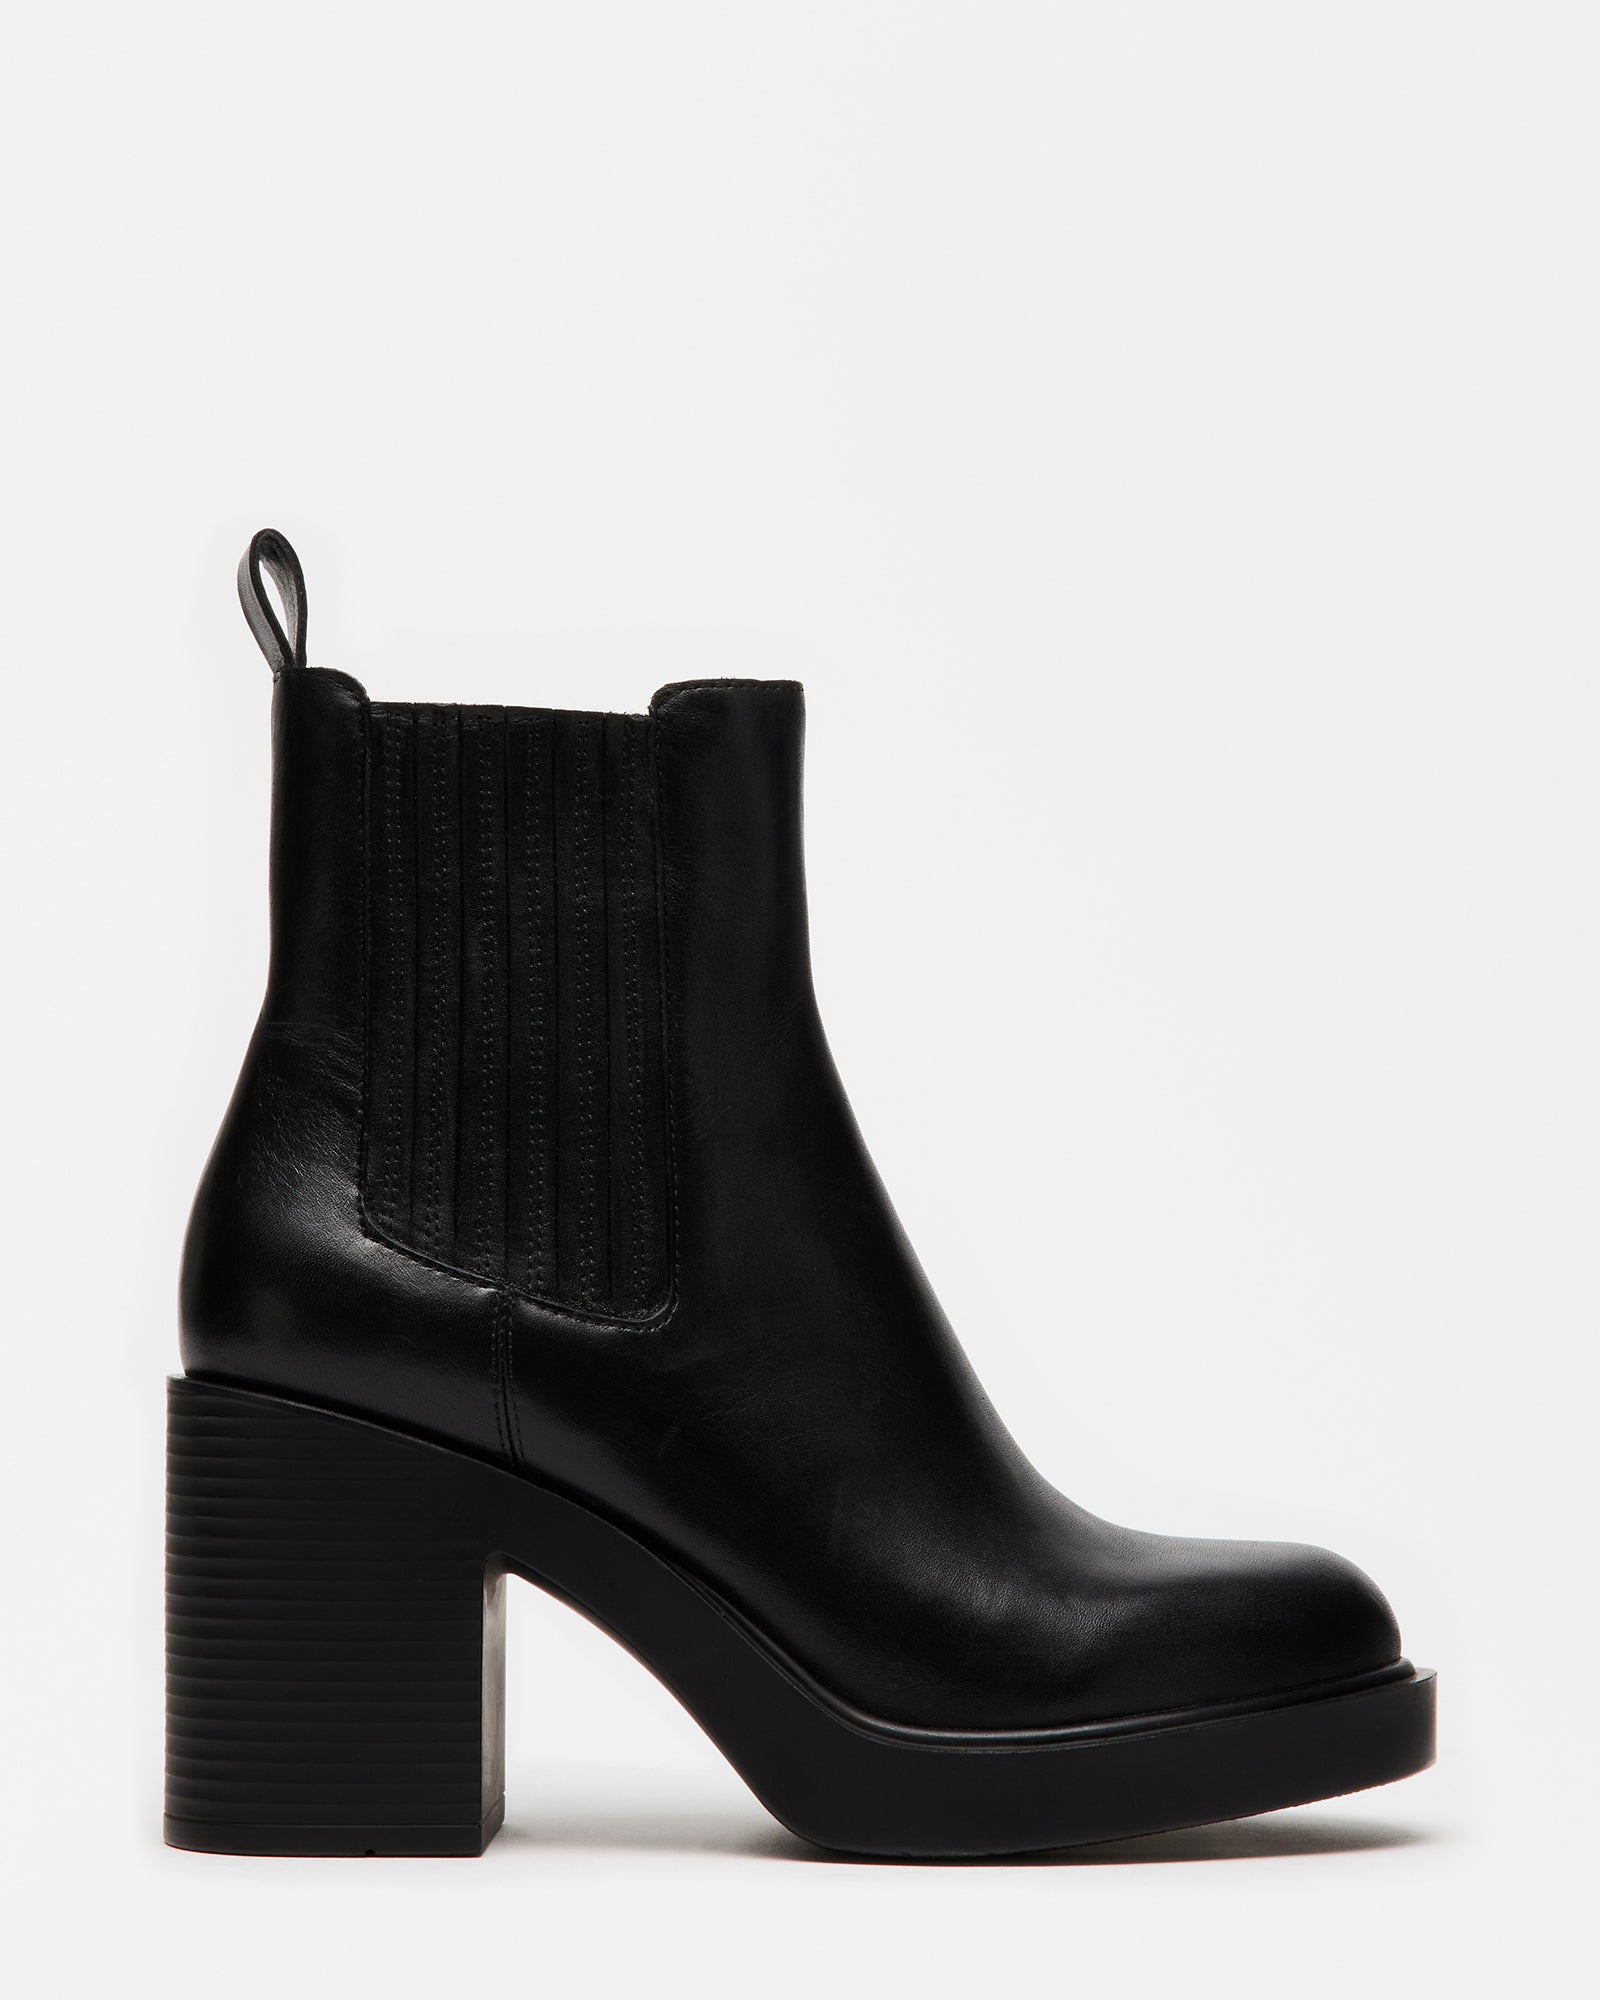 KAYDEN Black Leather Block Heel Chelsea Booties | Women's Designer Booties  – Steve Madden Canada